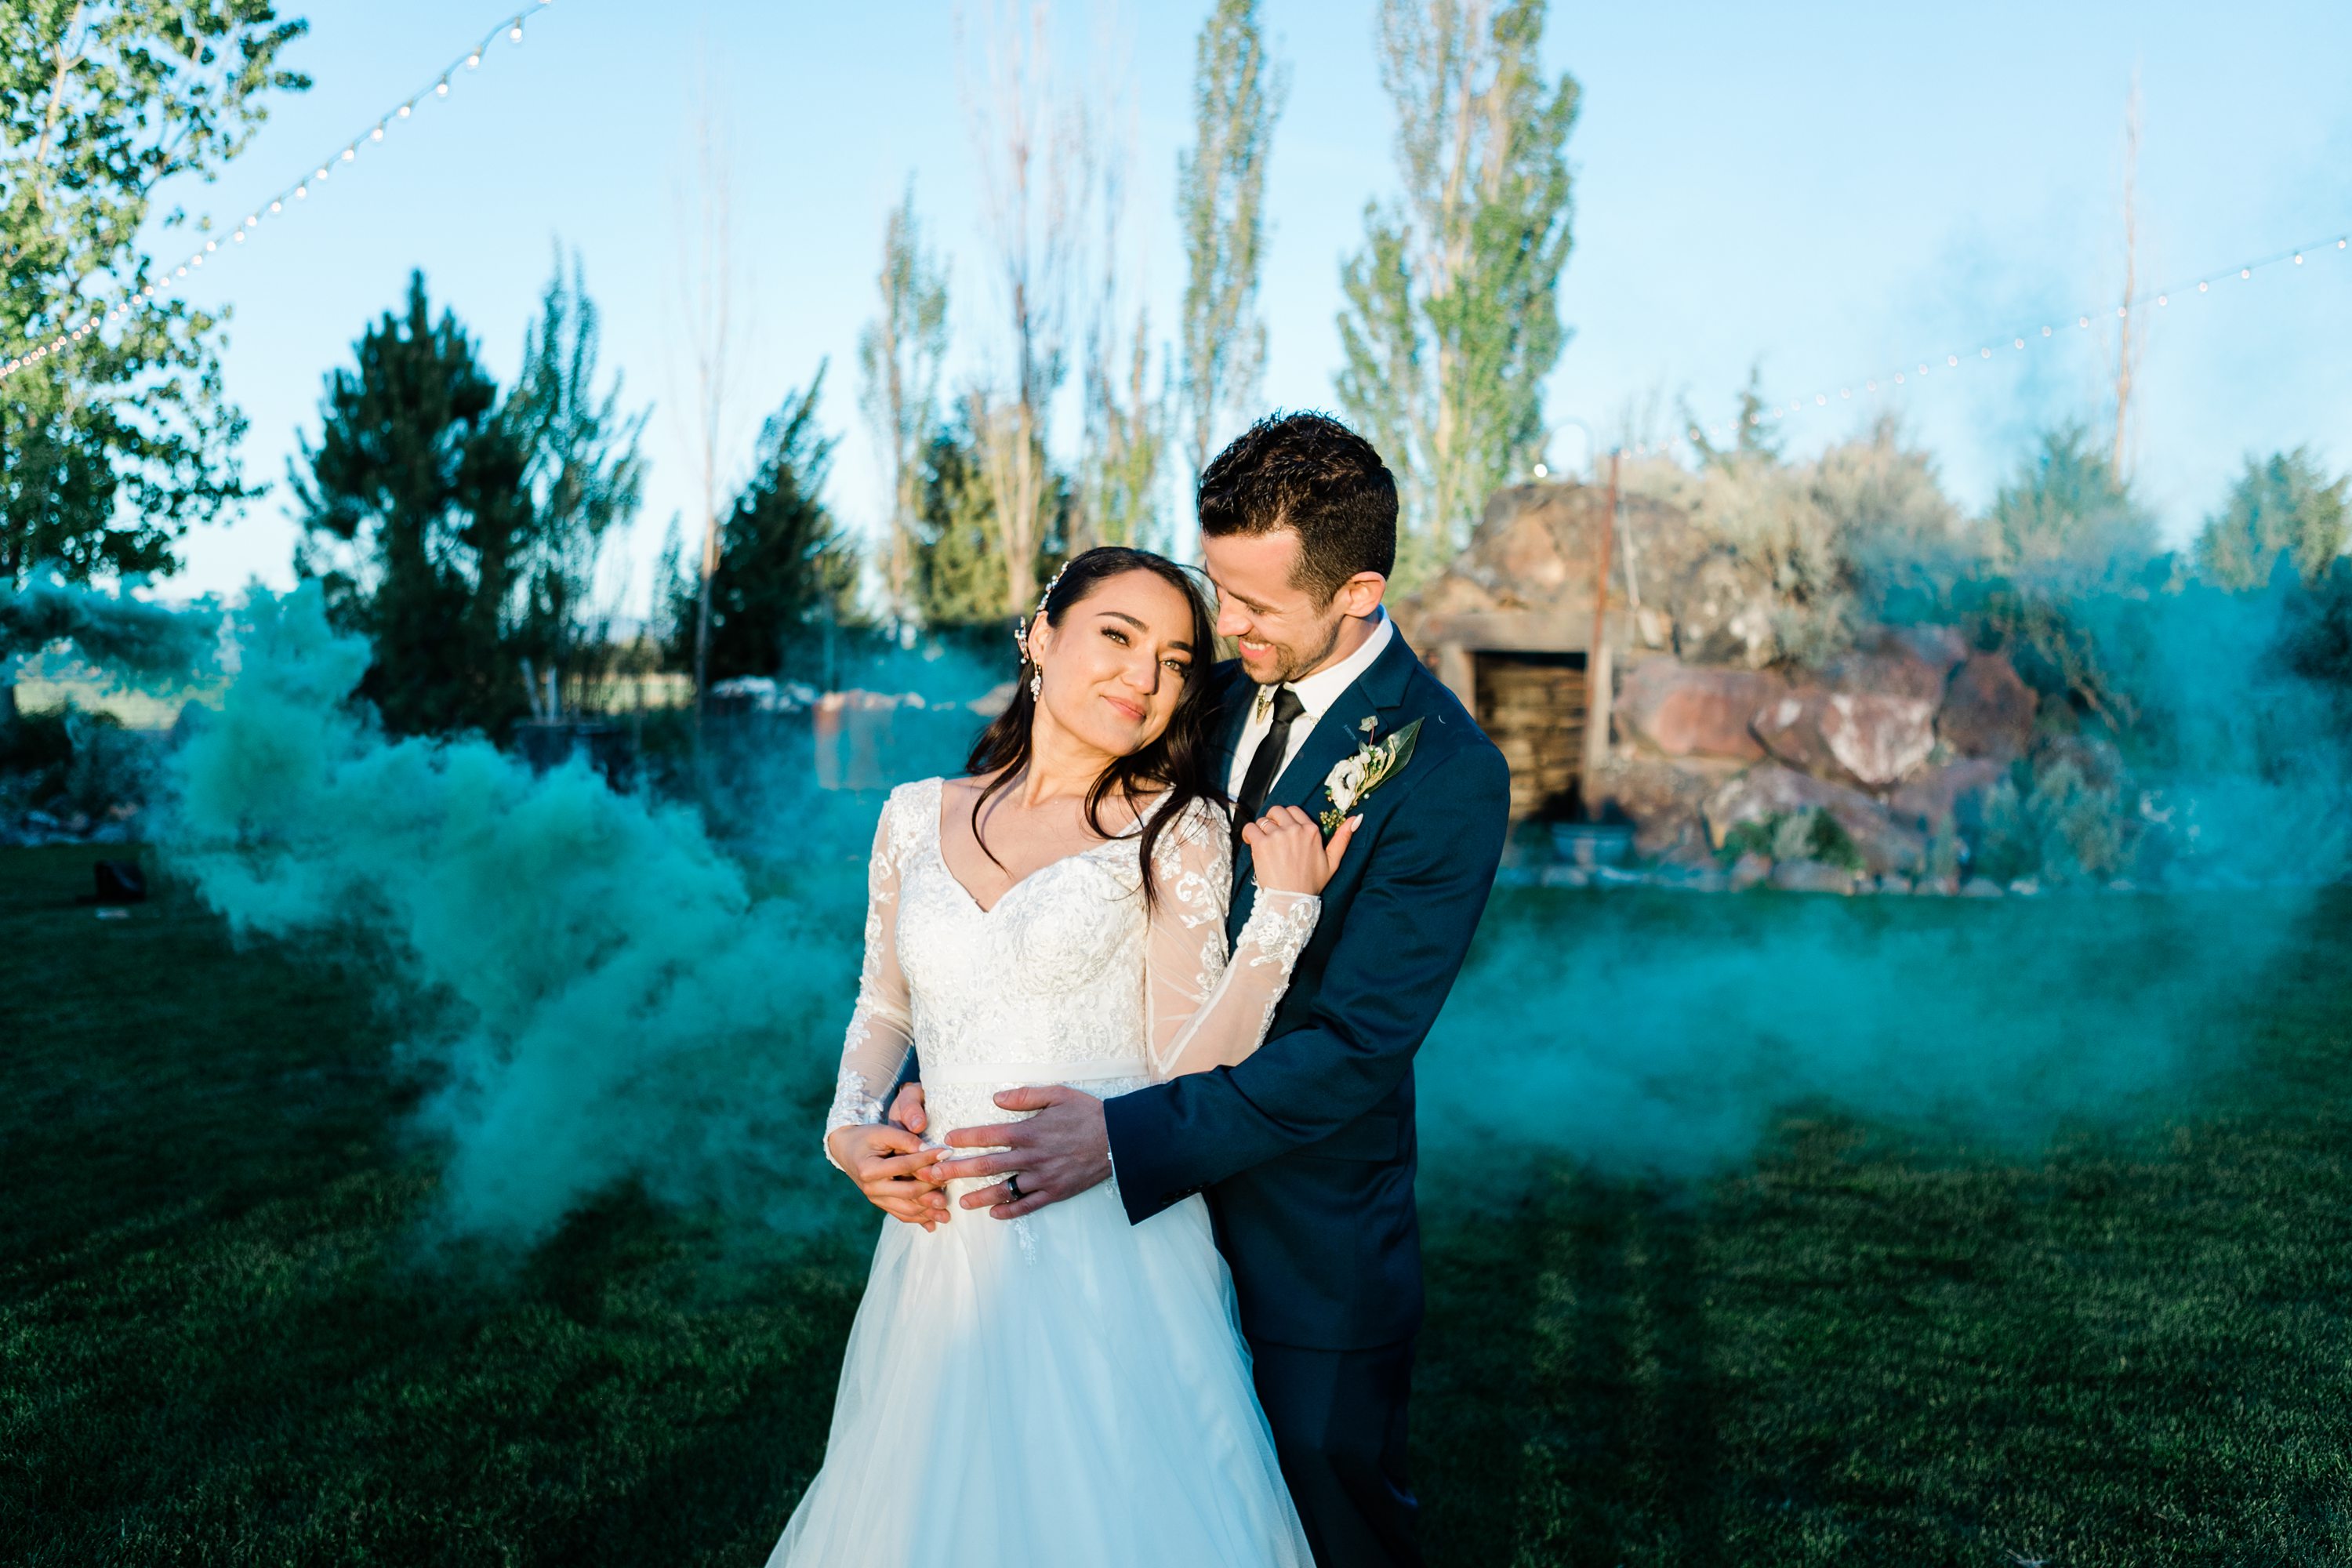 bosie wedding photographers,wedding smoke bomb pictures,idaho wedding photographer,wedding day details,smoke bomb photos,wedding smoke bombs